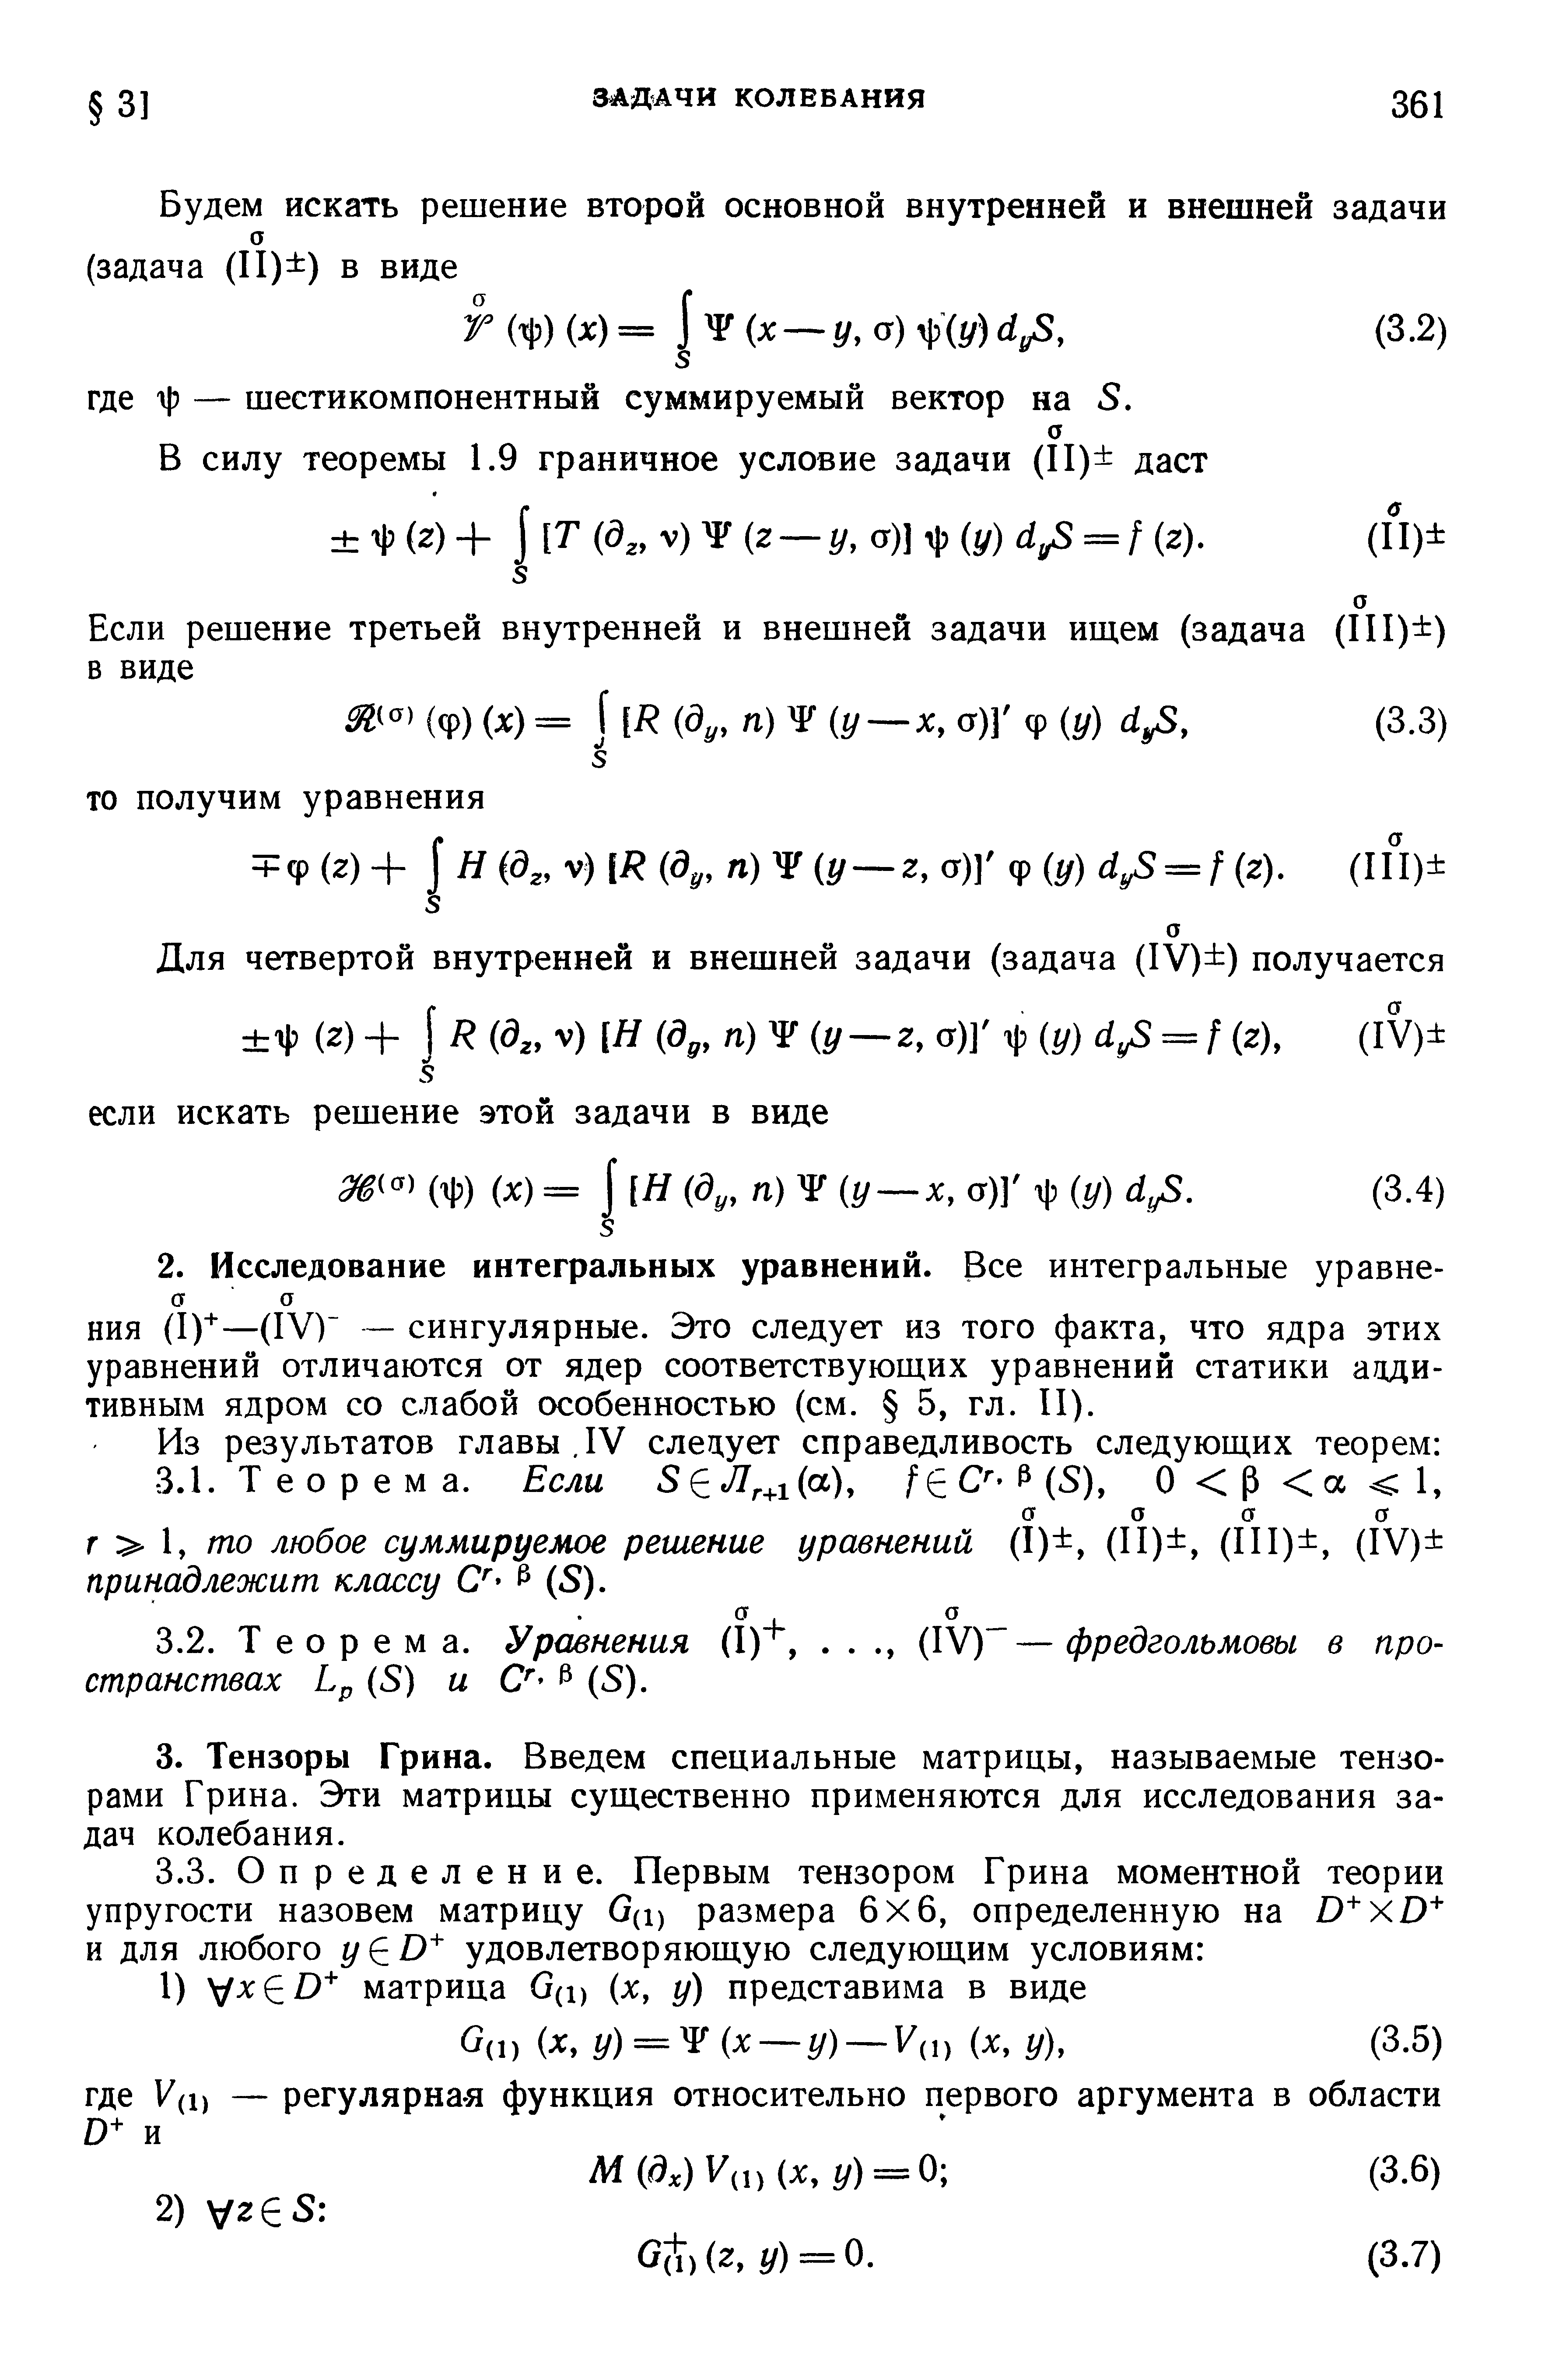 НИЯ (1) —(IV) — сингулярные. Это следует из того факта, что ядра этих уравнений отличаются от ядер соответствующих уравнений статики аддитивным ядром со слабой особенностью (см. 5, гл. II).
